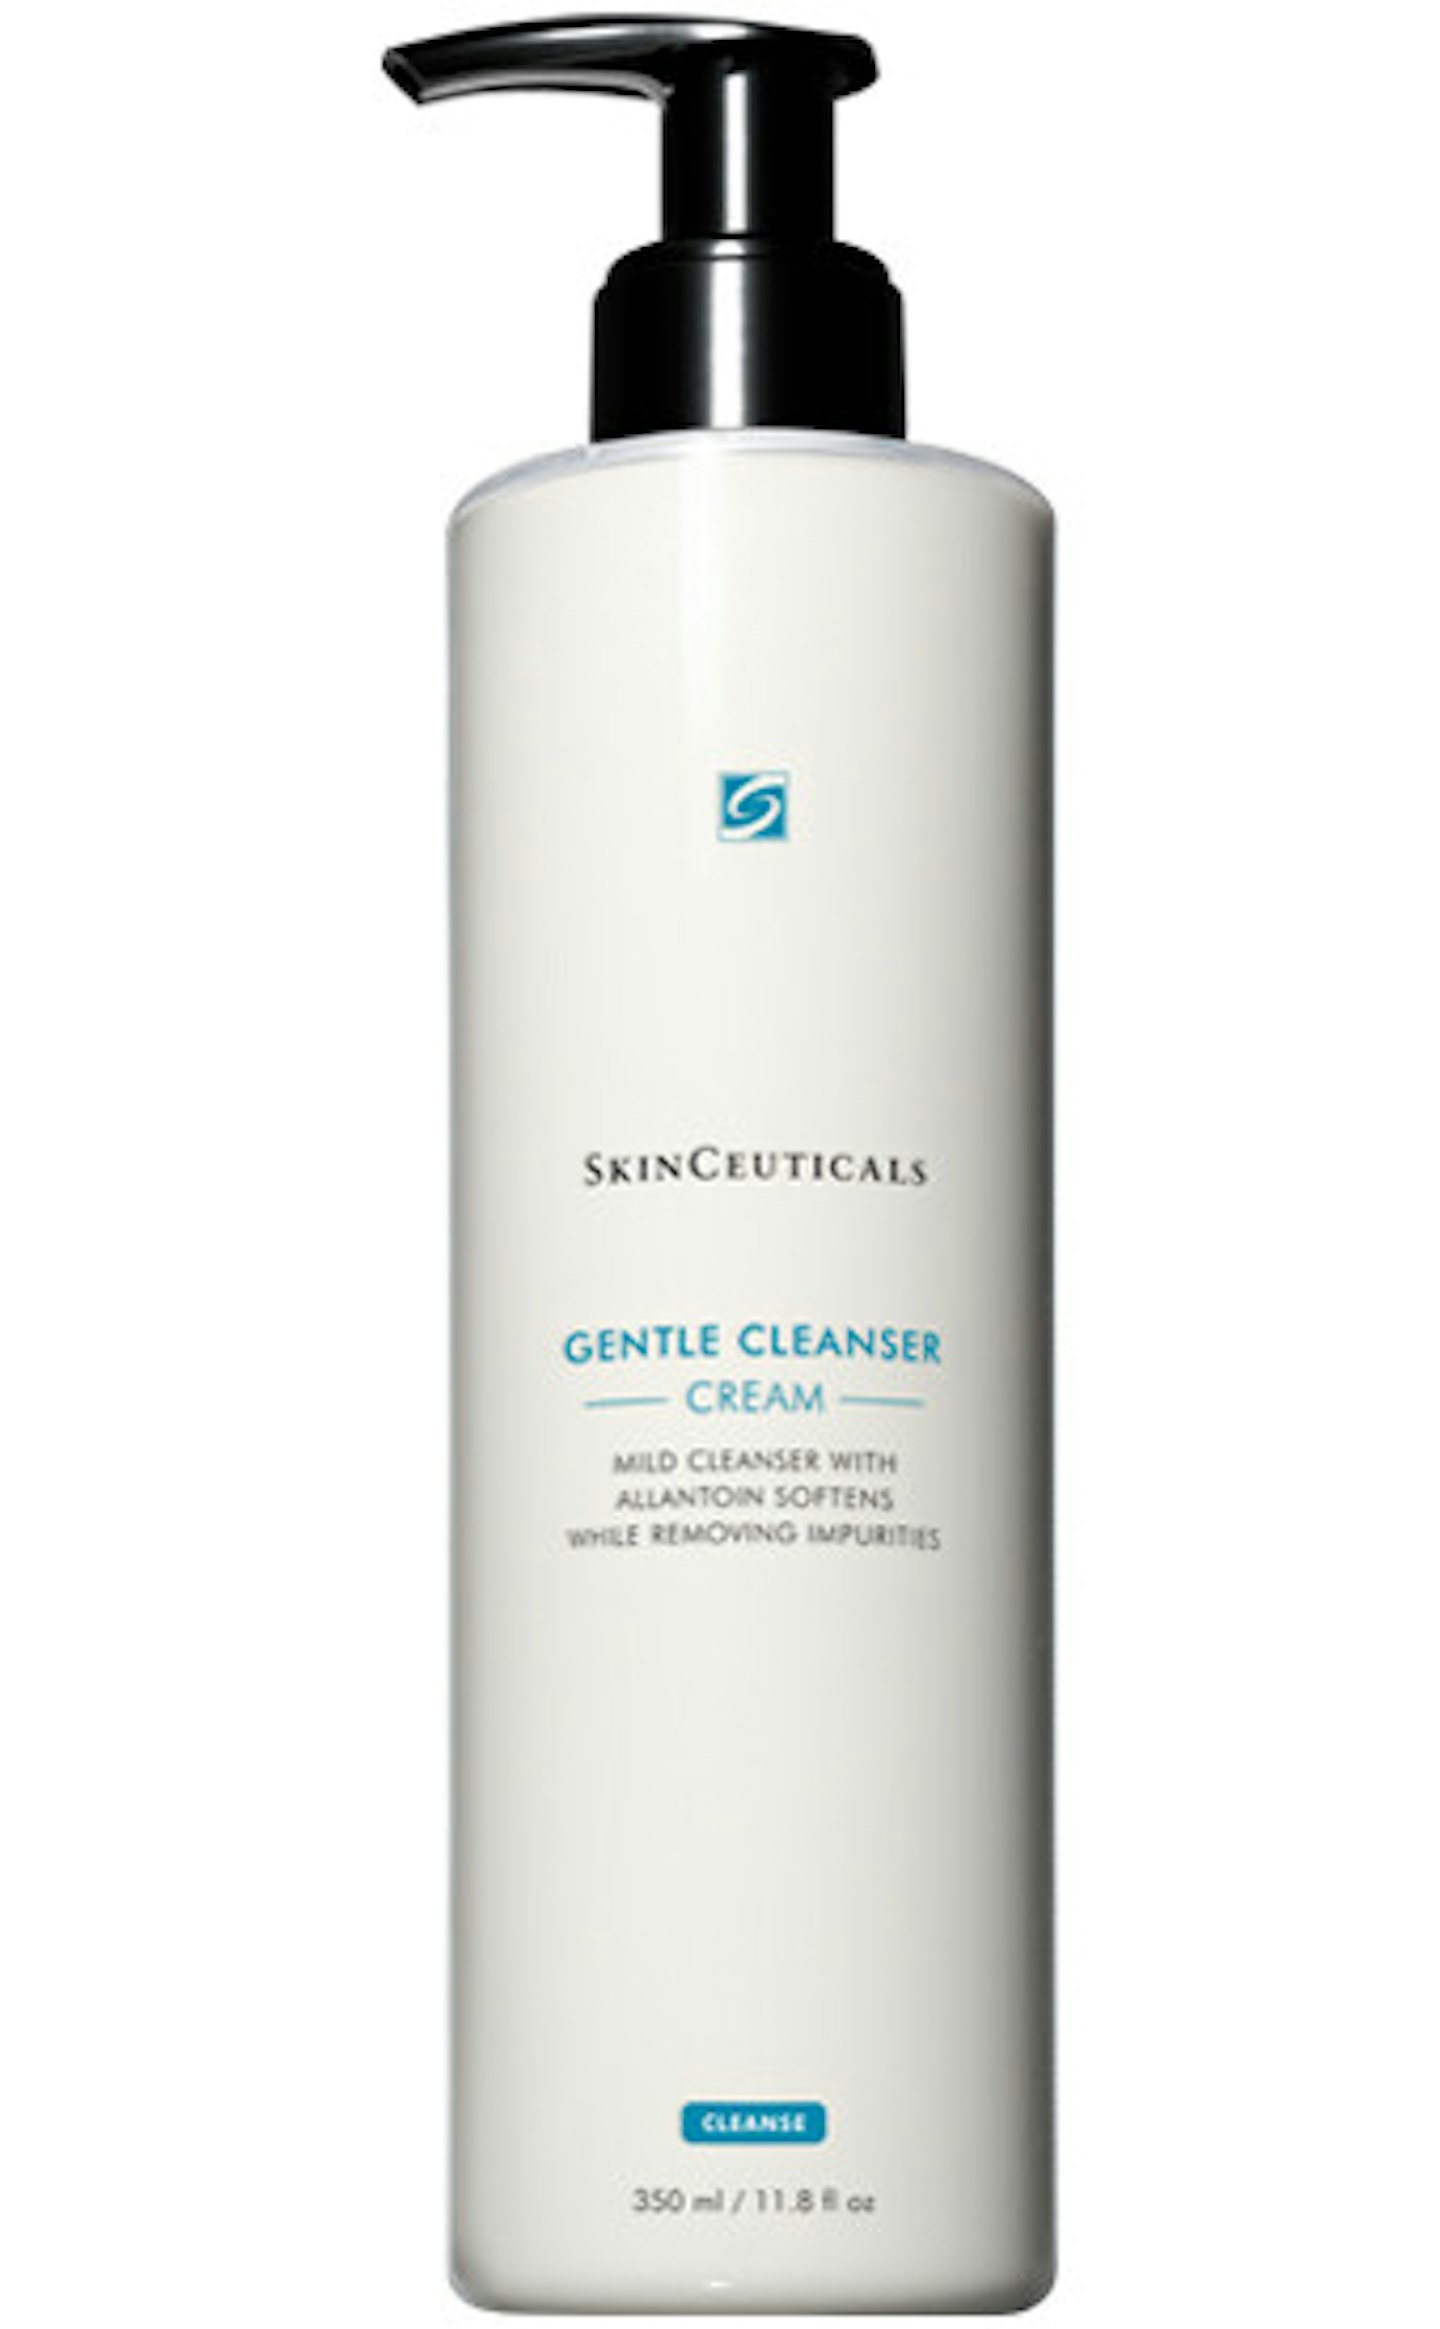 SkinCeuticals Gentle Cleanser, £35